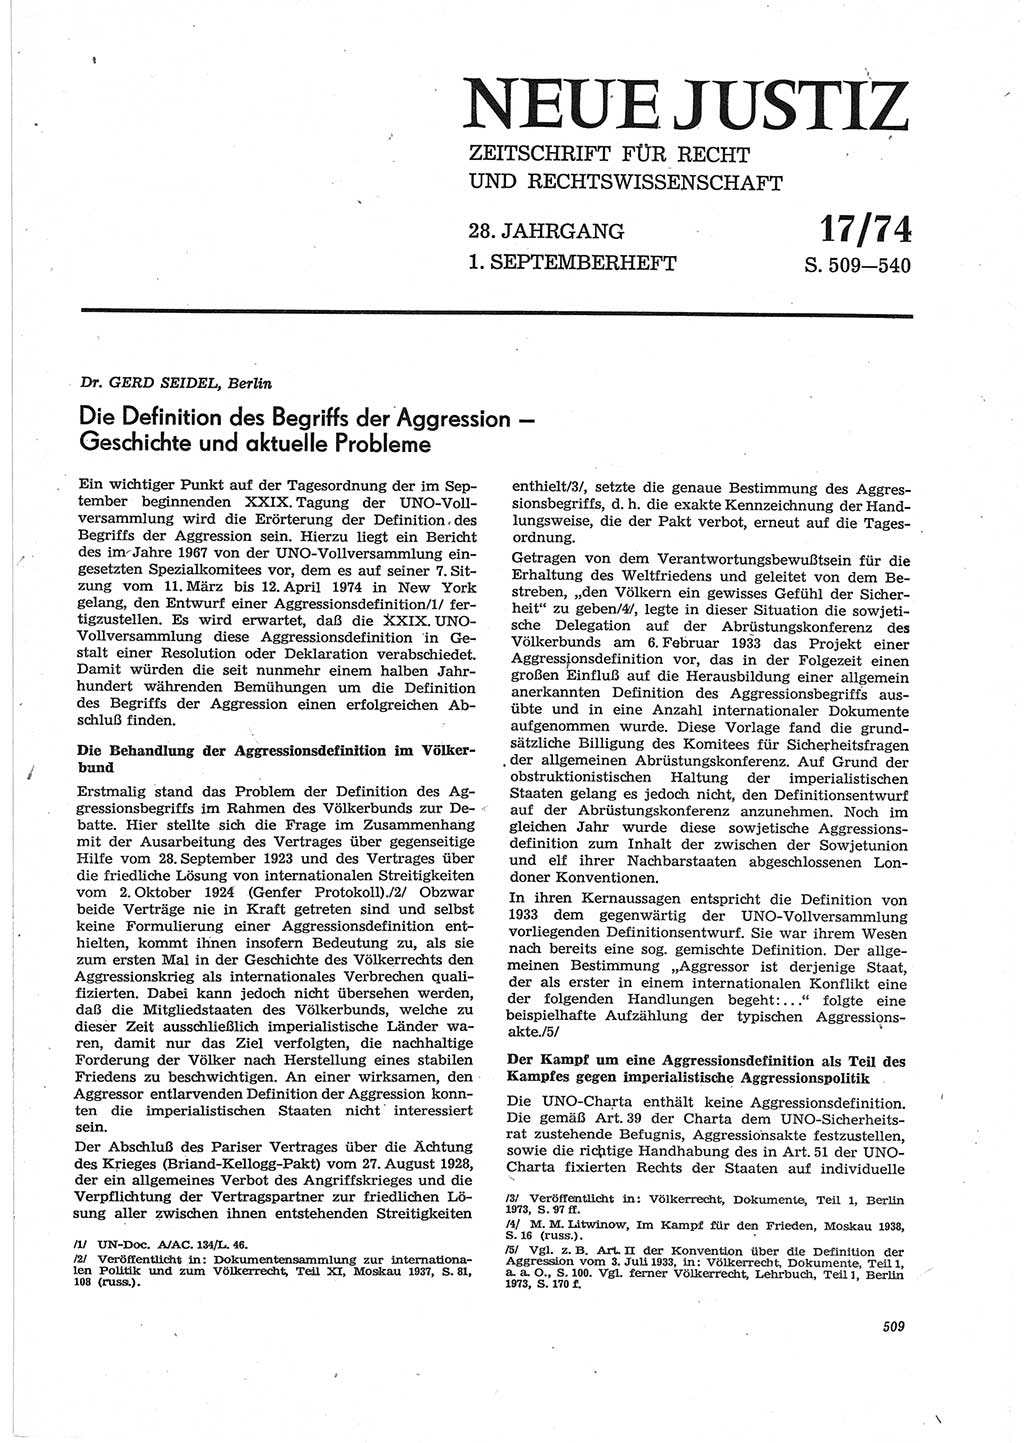 Neue Justiz (NJ), Zeitschrift für Recht und Rechtswissenschaft [Deutsche Demokratische Republik (DDR)], 28. Jahrgang 1974, Seite 509 (NJ DDR 1974, S. 509)